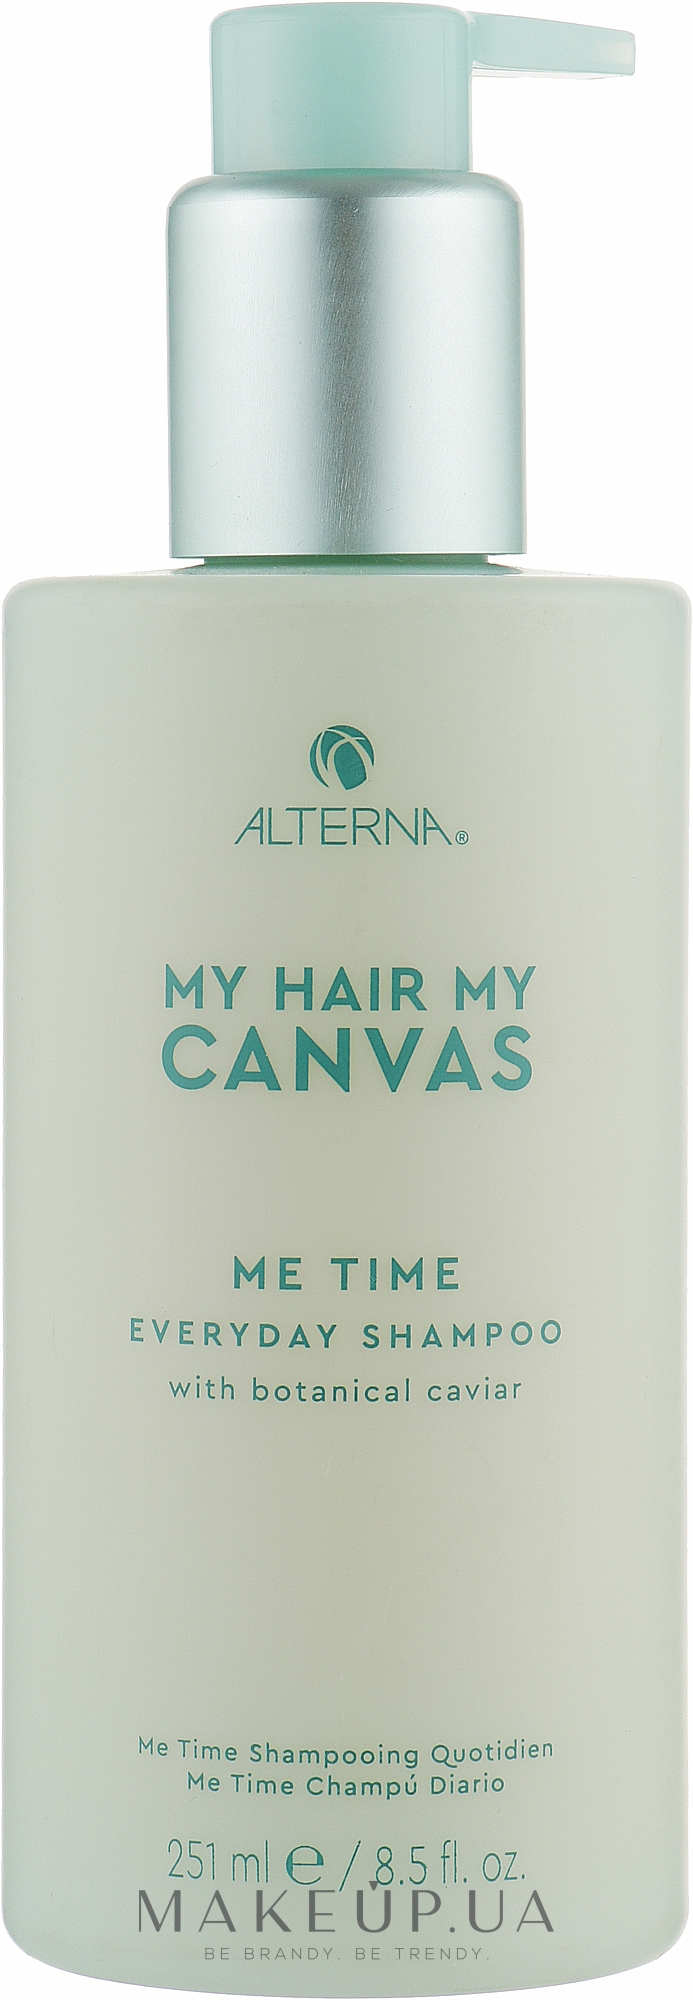 Щоденний зволожувальний шампунь - Alterna My Hair My Canvas Me Time Everyday Shampoo — фото 251ml